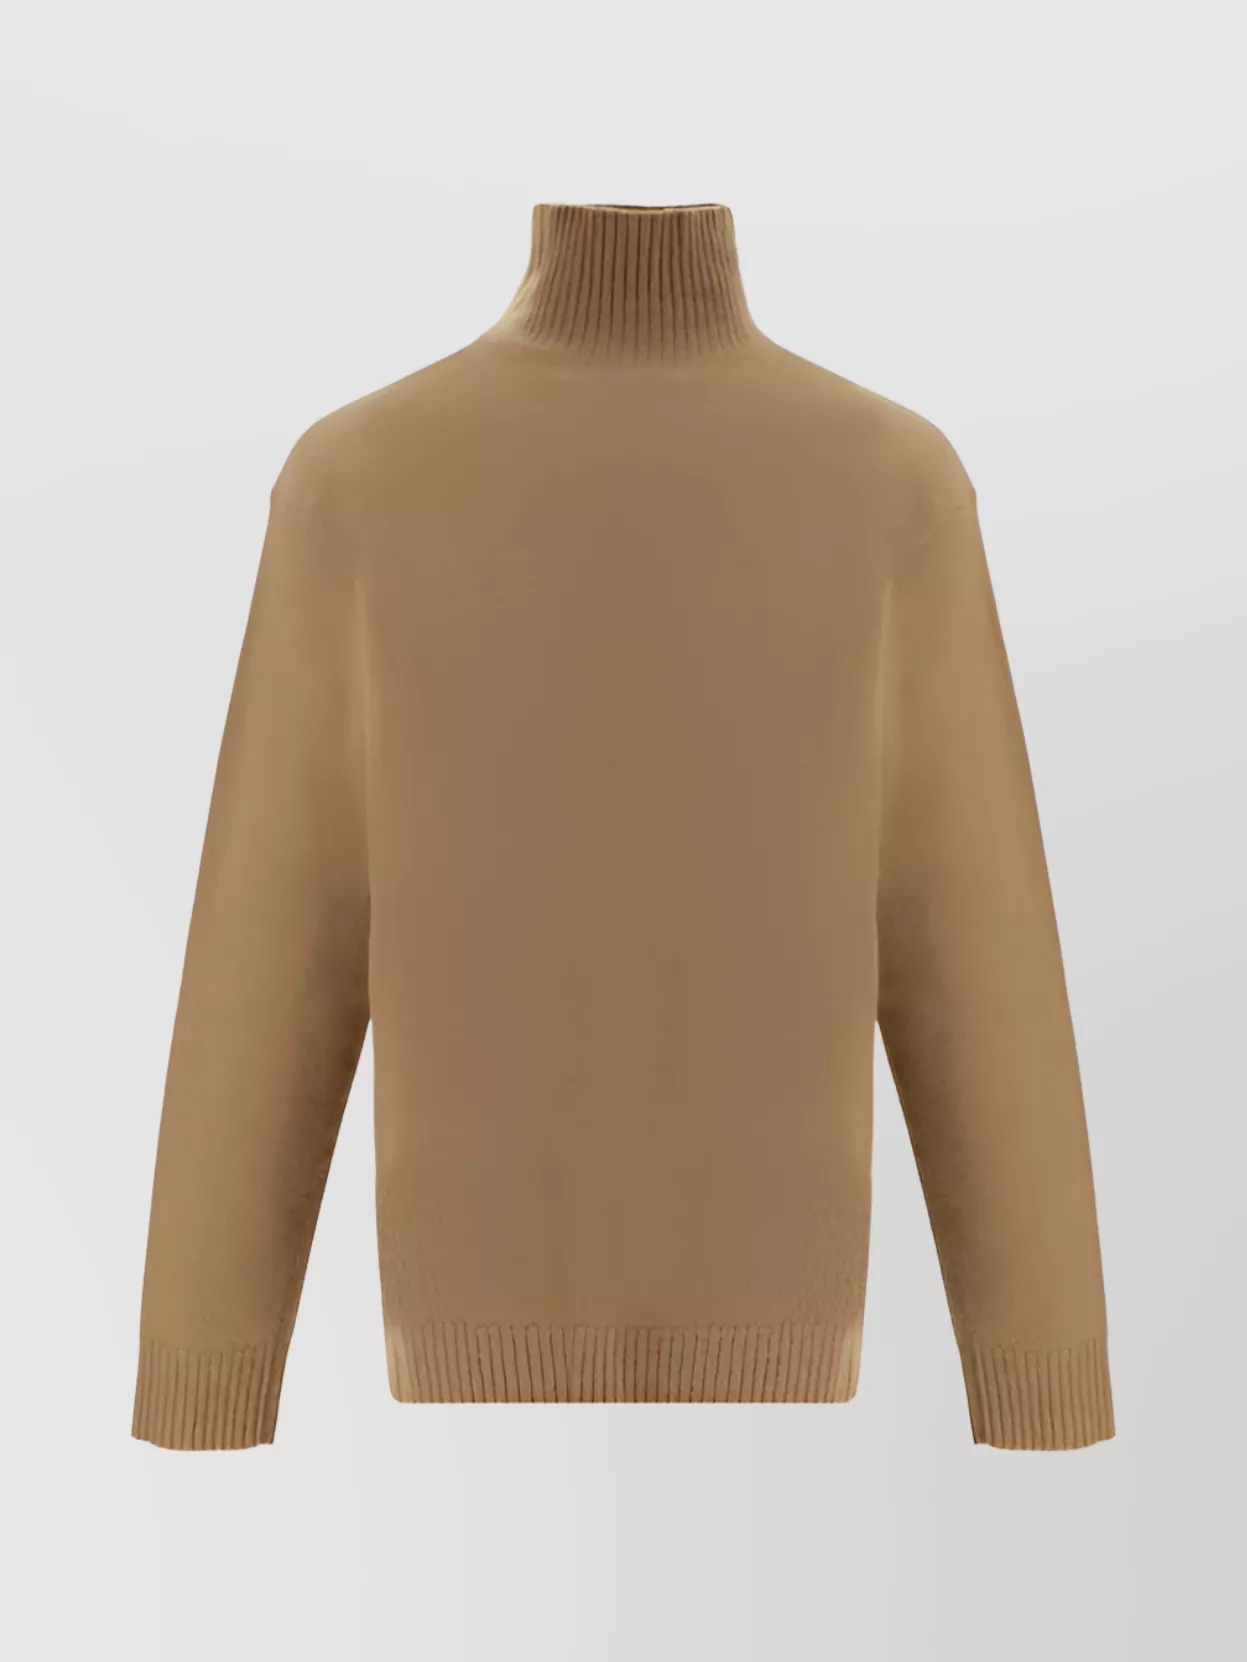 Jil Sander Monochrome Wool Turtleneck Sweater In Brown